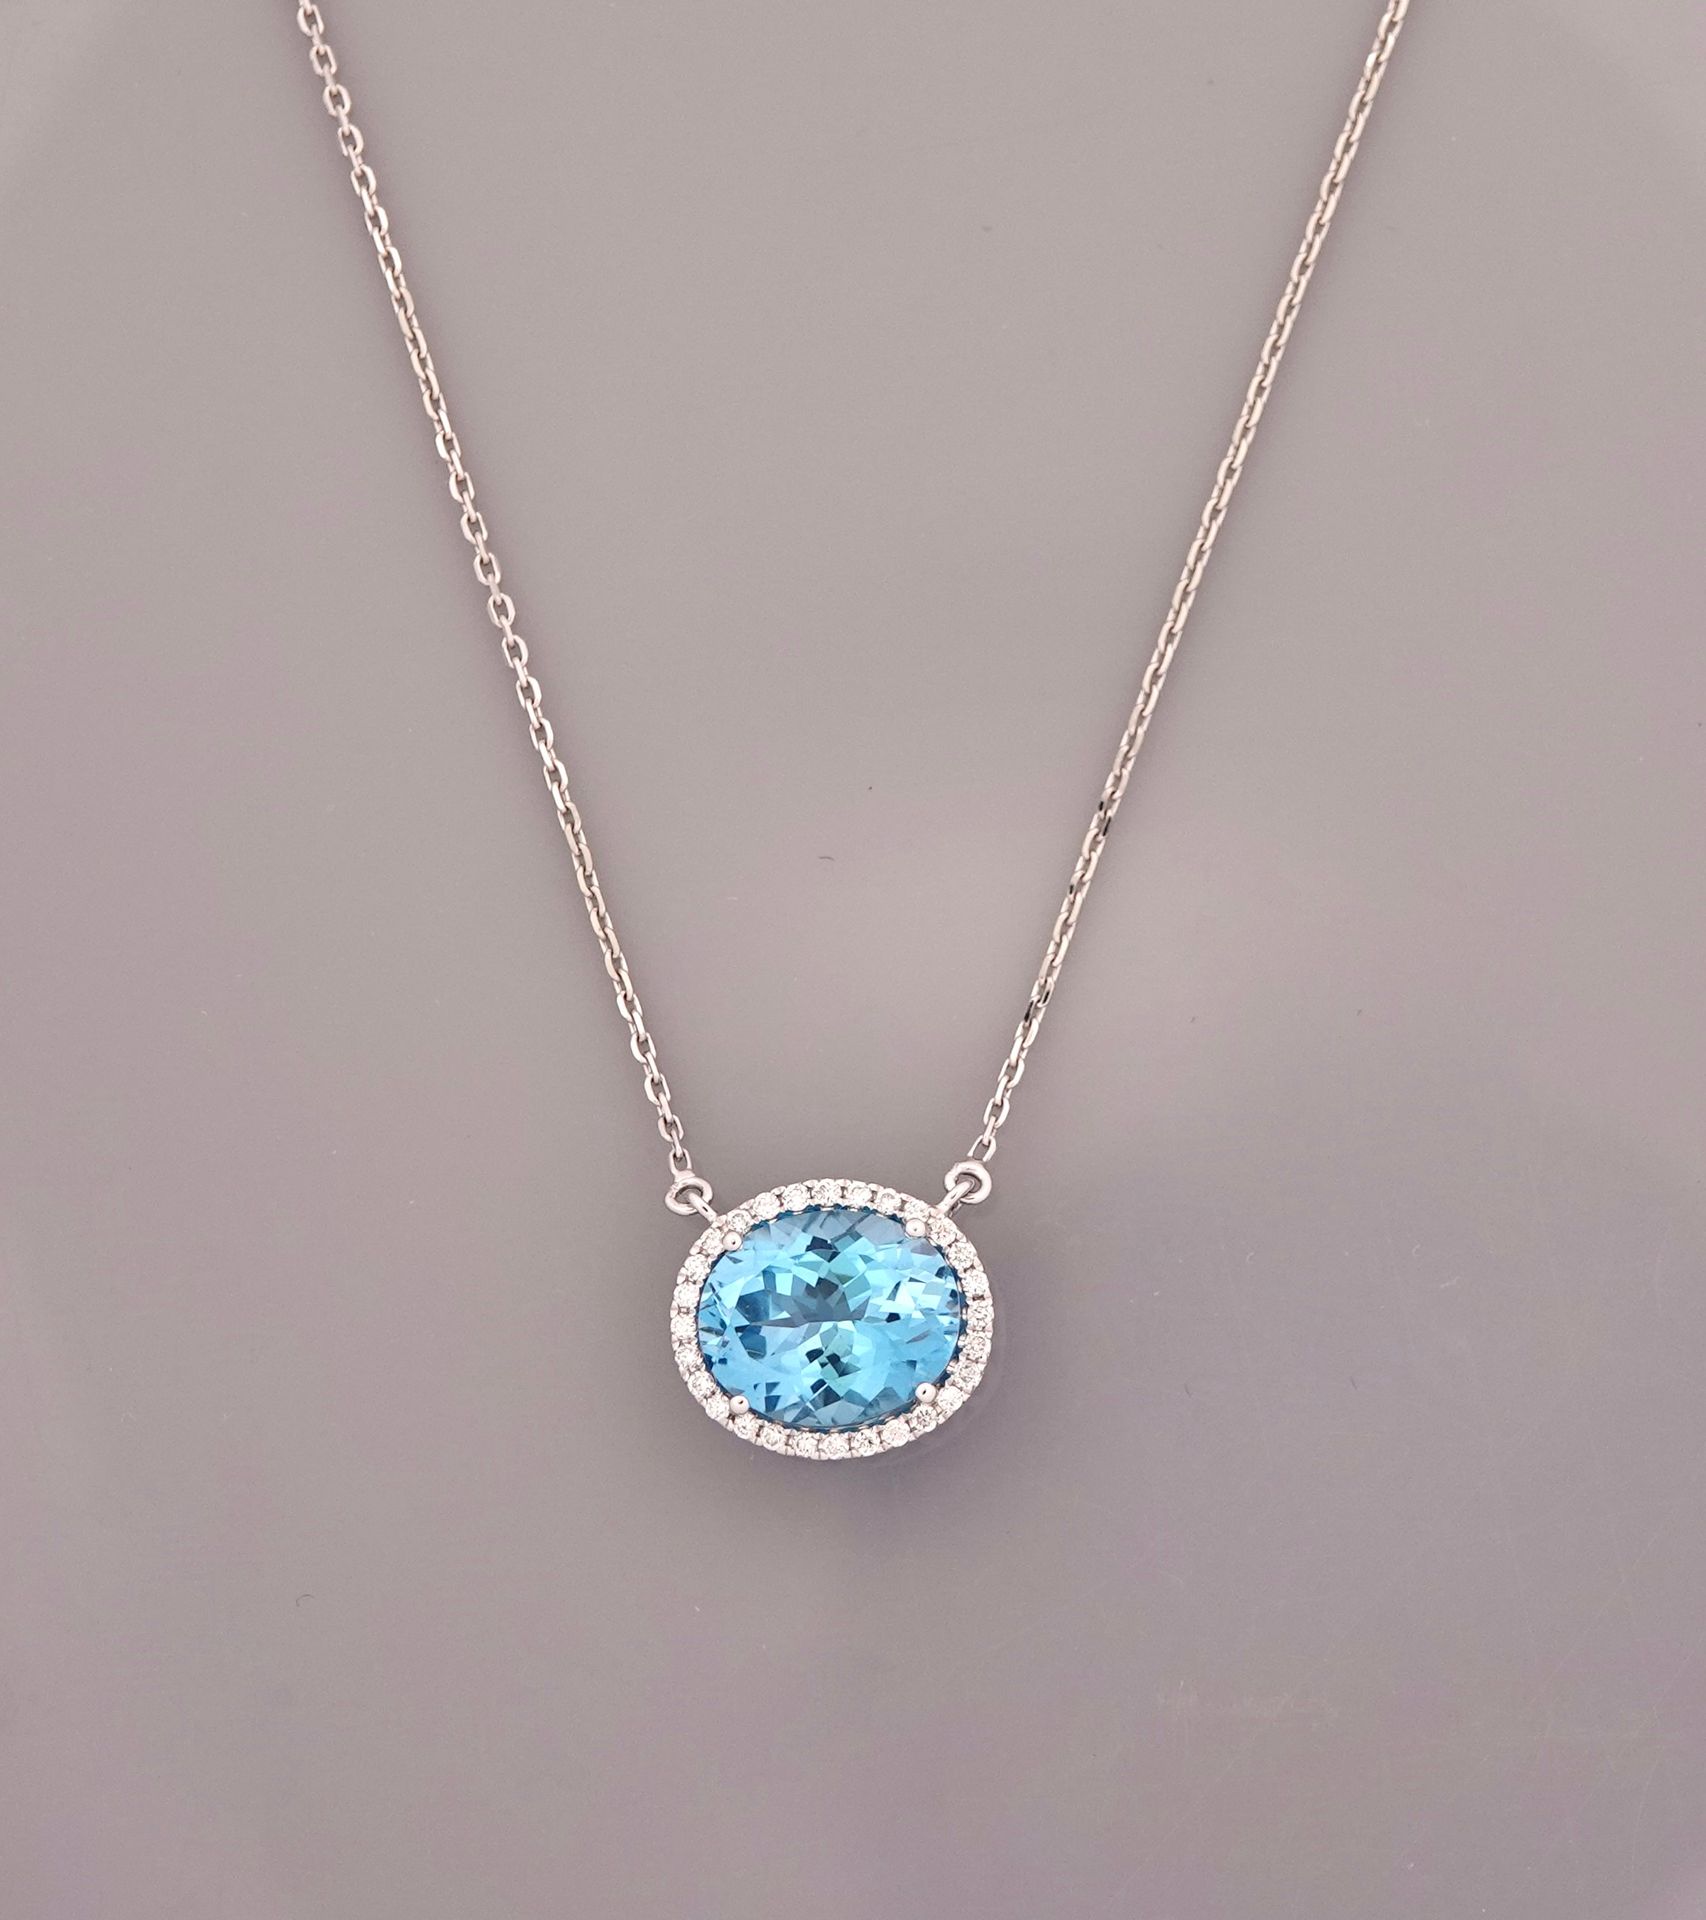 Null 白金项链，750毫米，以重约5.20克拉的椭圆形蓝色托帕石为中心，镶嵌钻石，弹簧环扣，长47厘米，重量：4.7克，毛重。